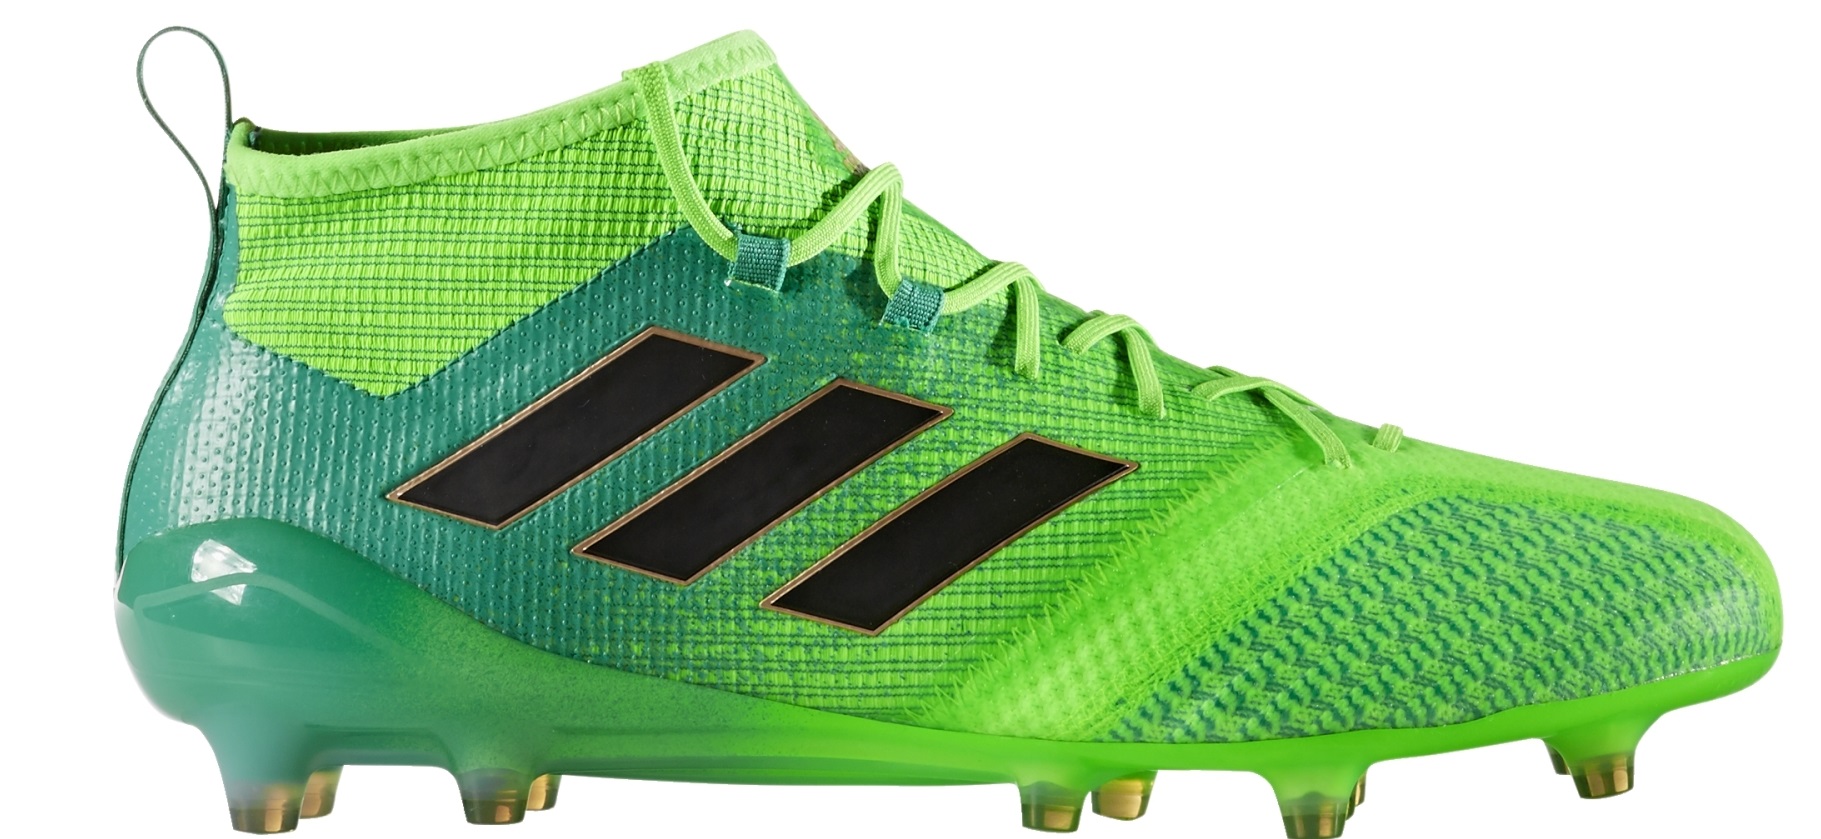 Botas de Fútbol Adidas Ace 17.1 PrimeKnit Dispara Pack colore verde - - SportIT.com